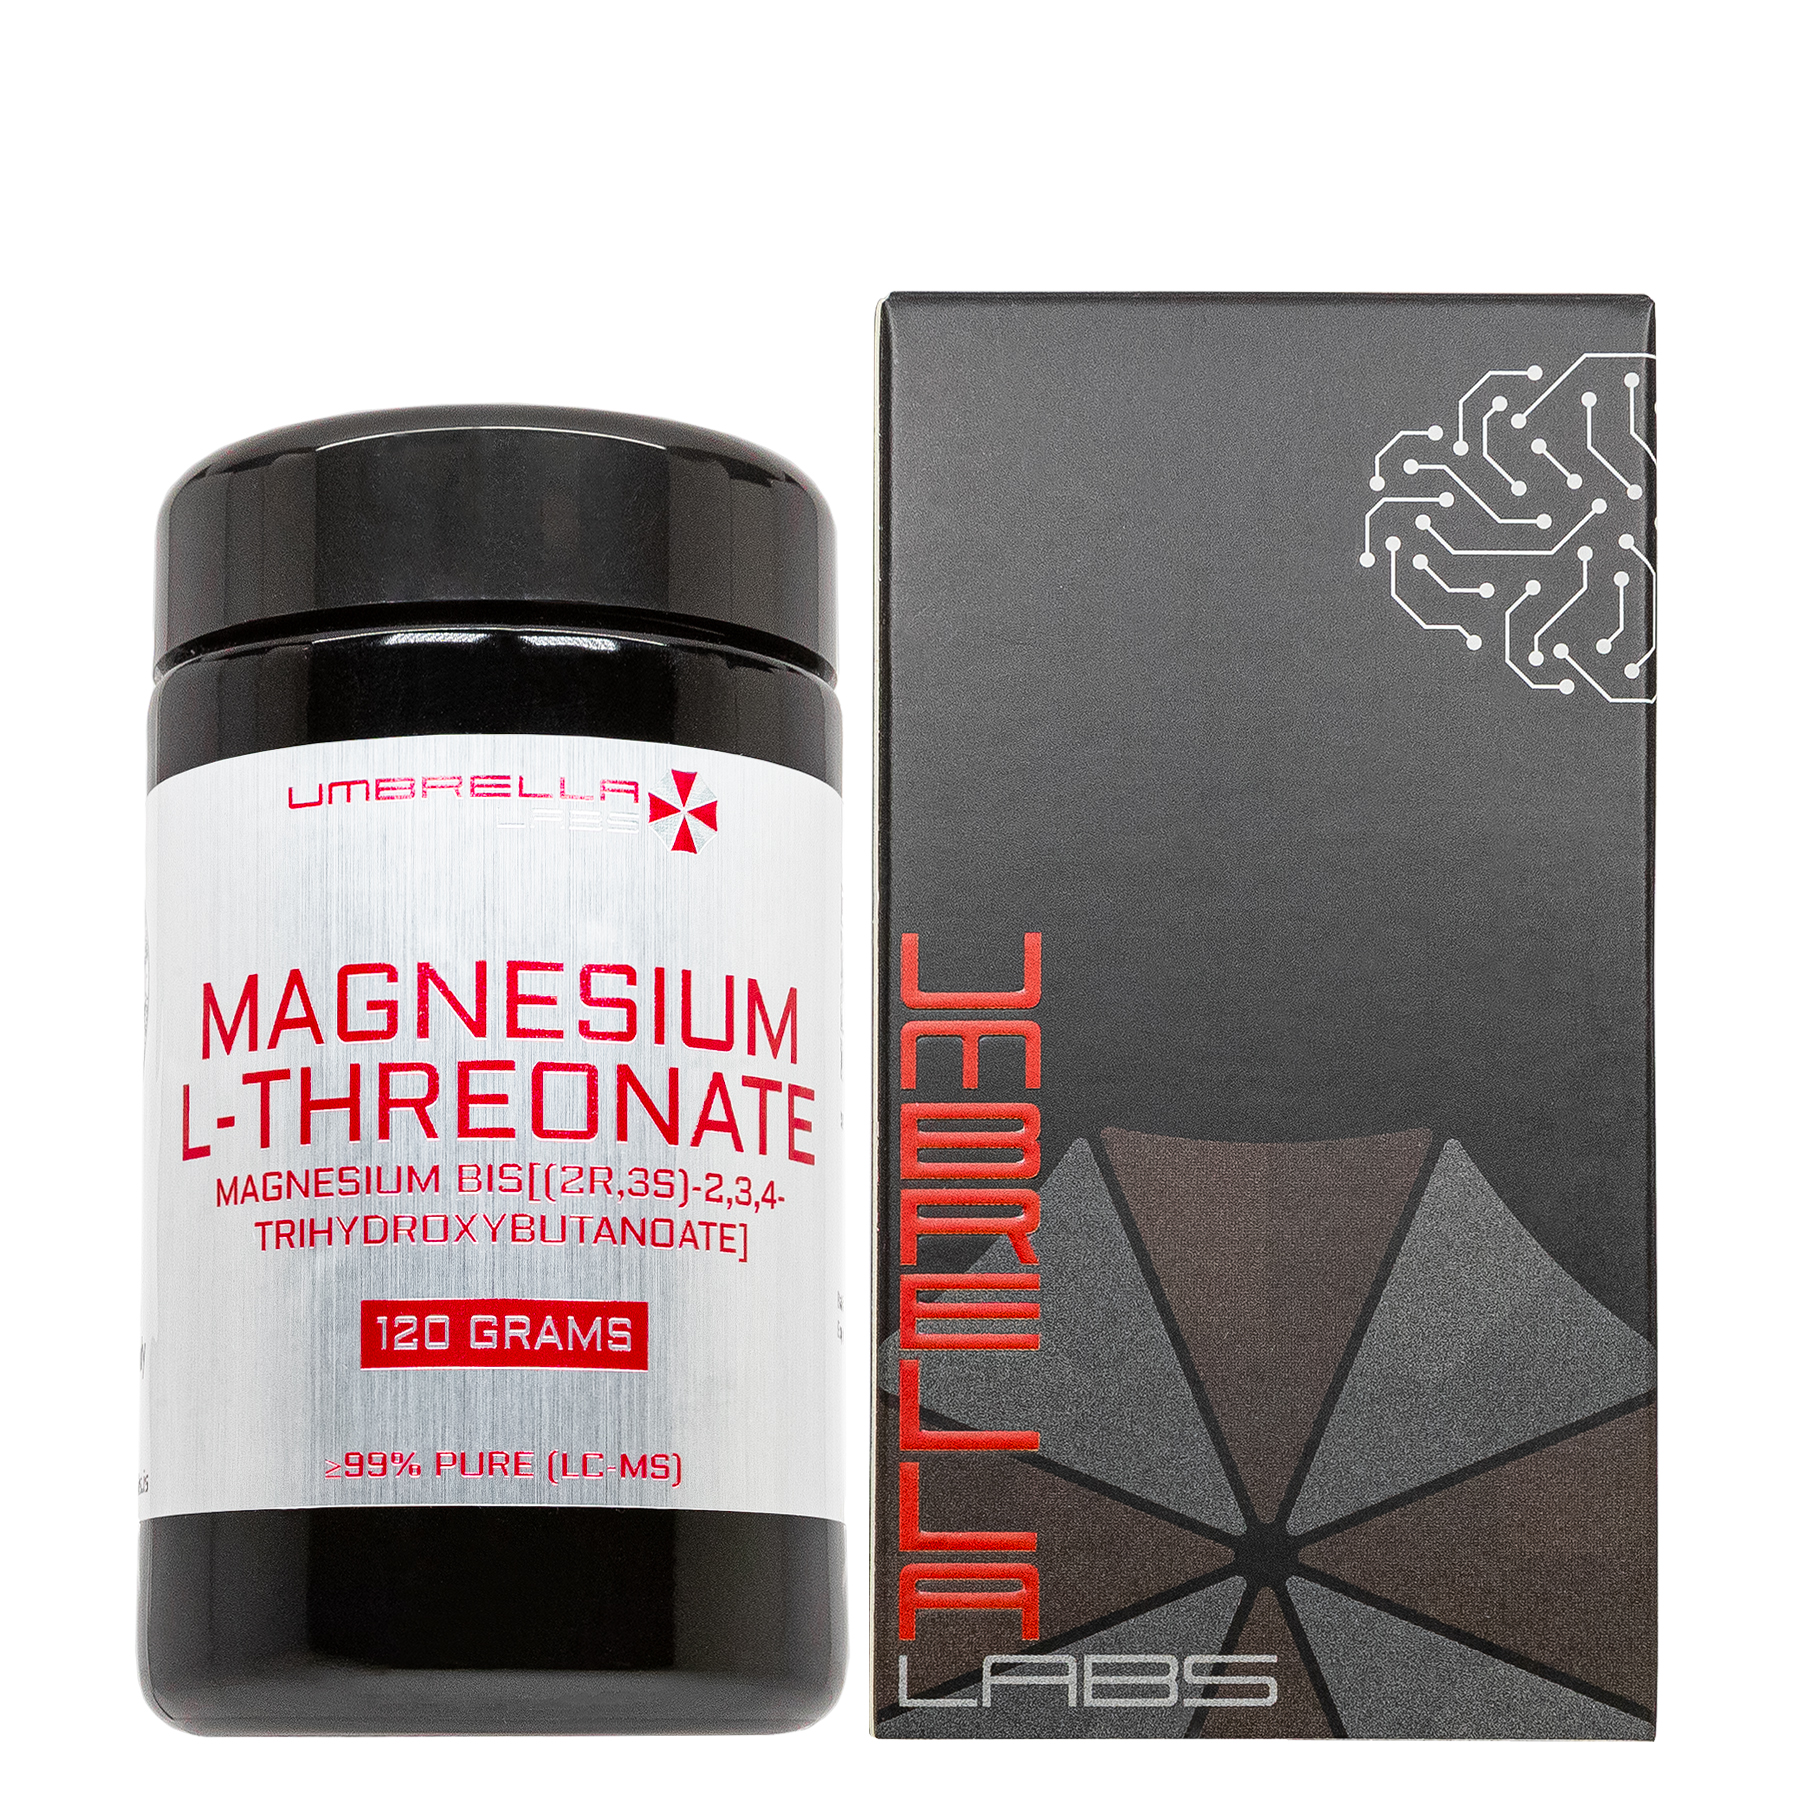 magnesium l threonate powder